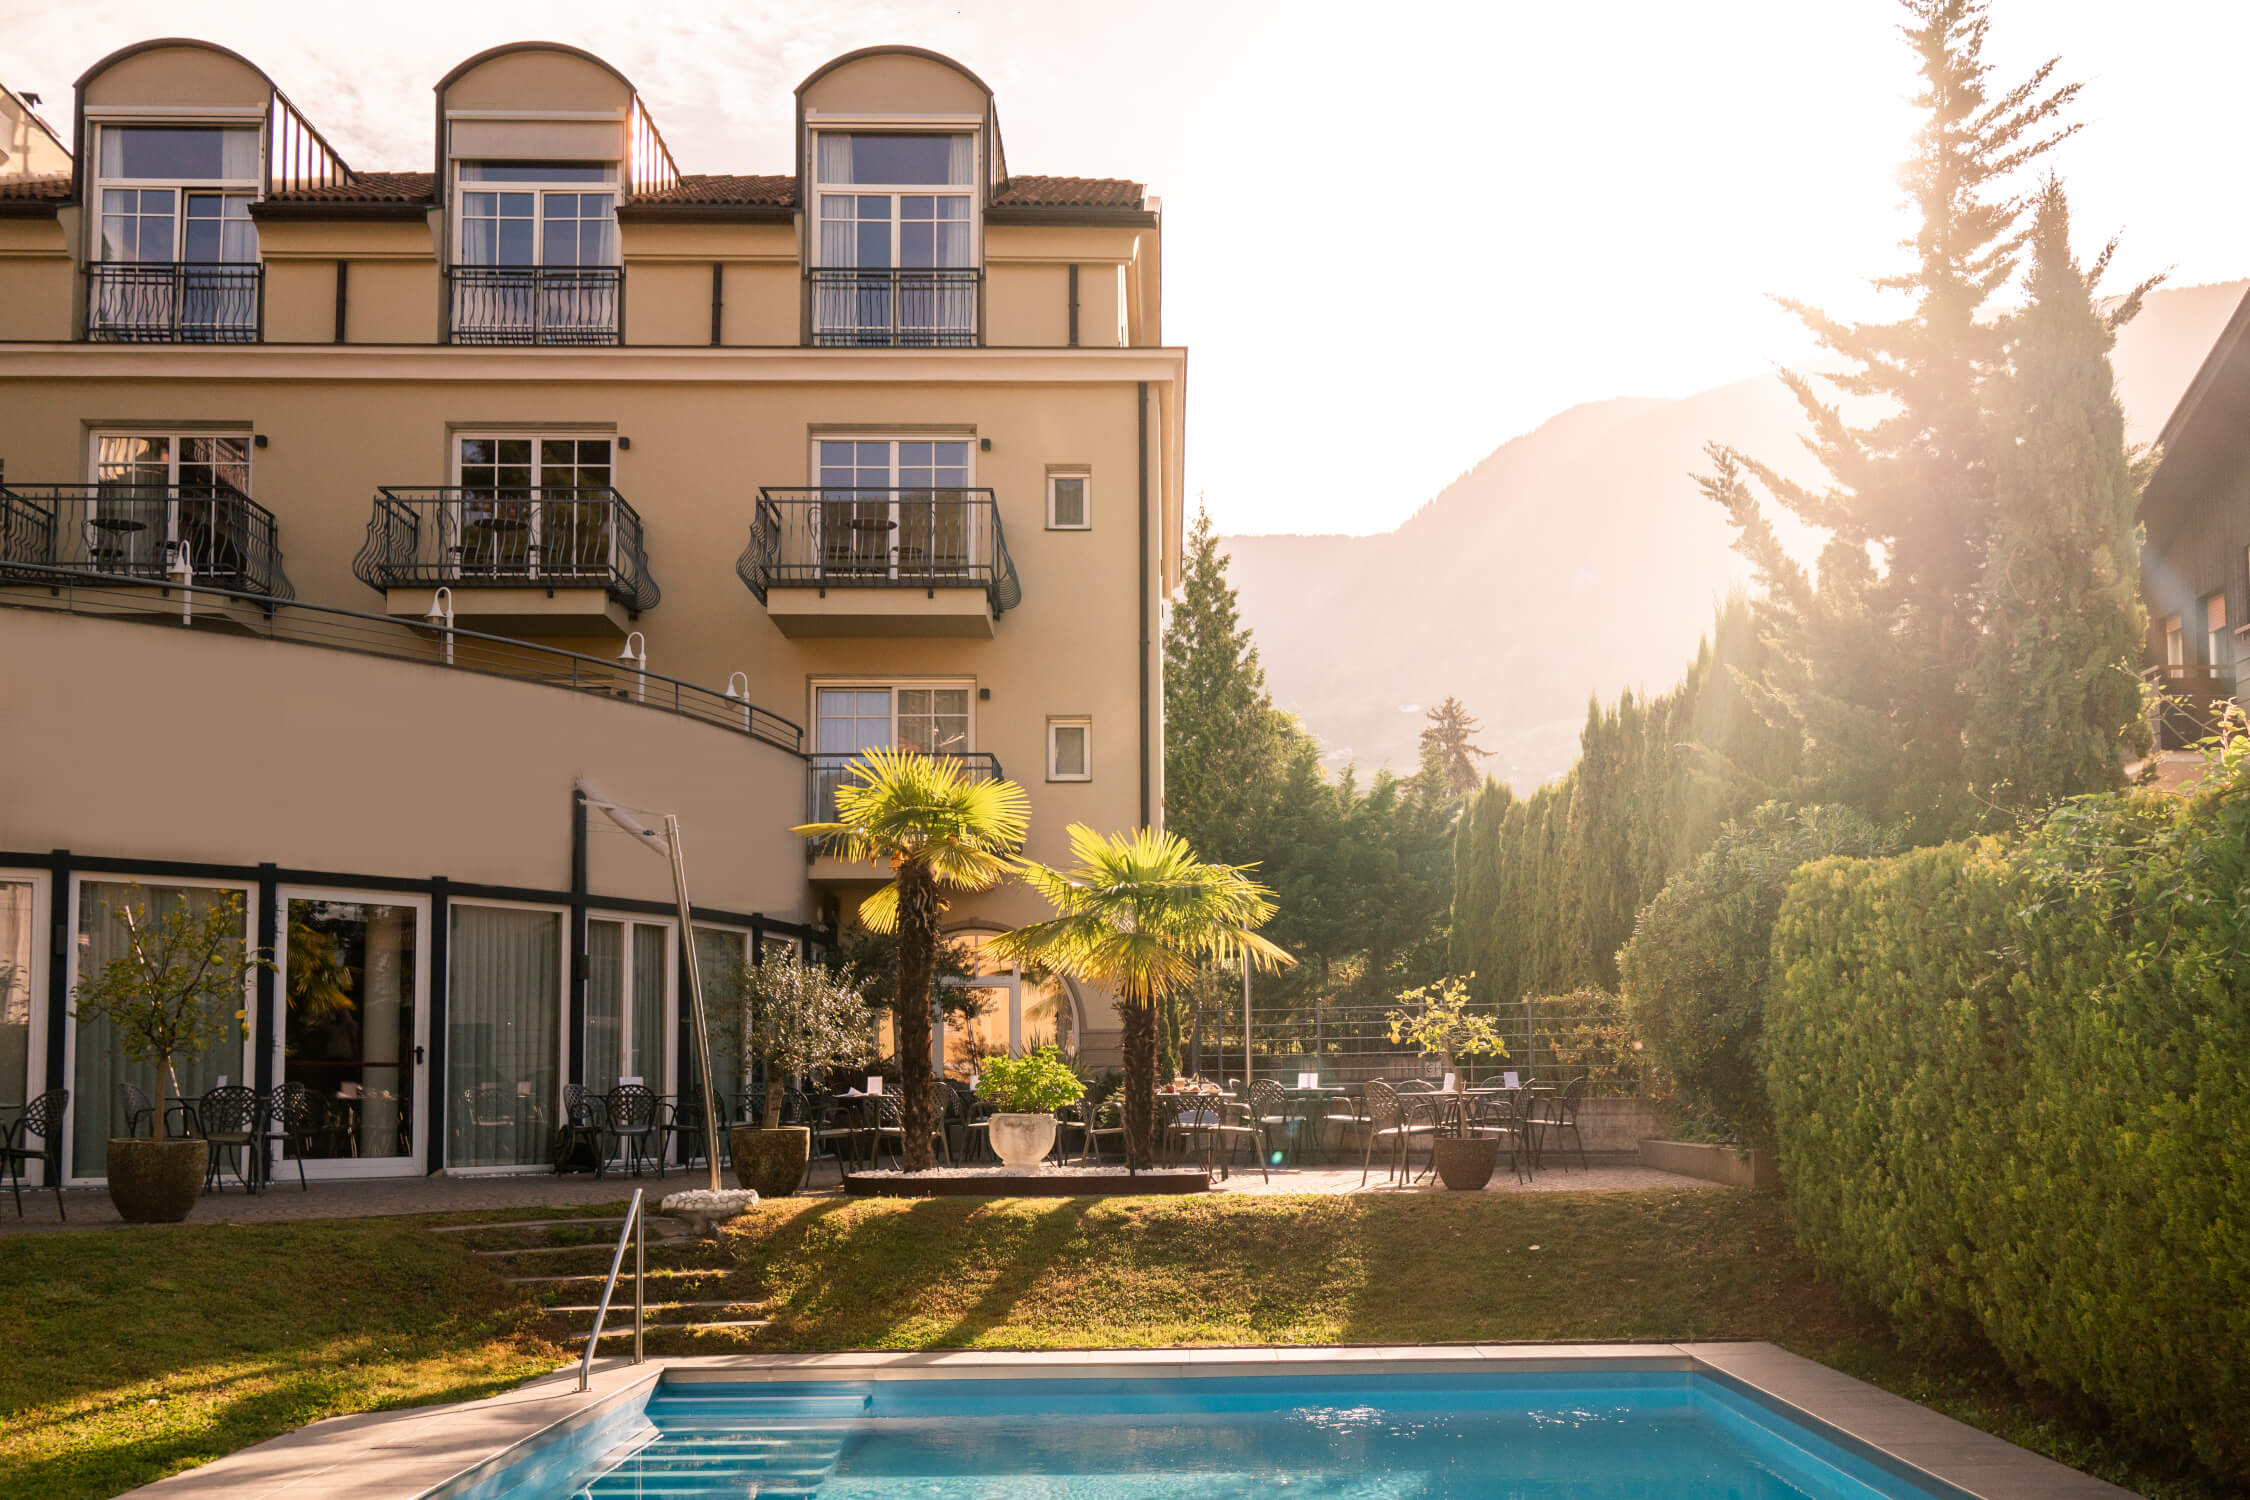 Hotel-Villa-Laurus-Merano-Aussen-Pool-Terrasse-BeatricePilotto-L1410521-2250x1500-2